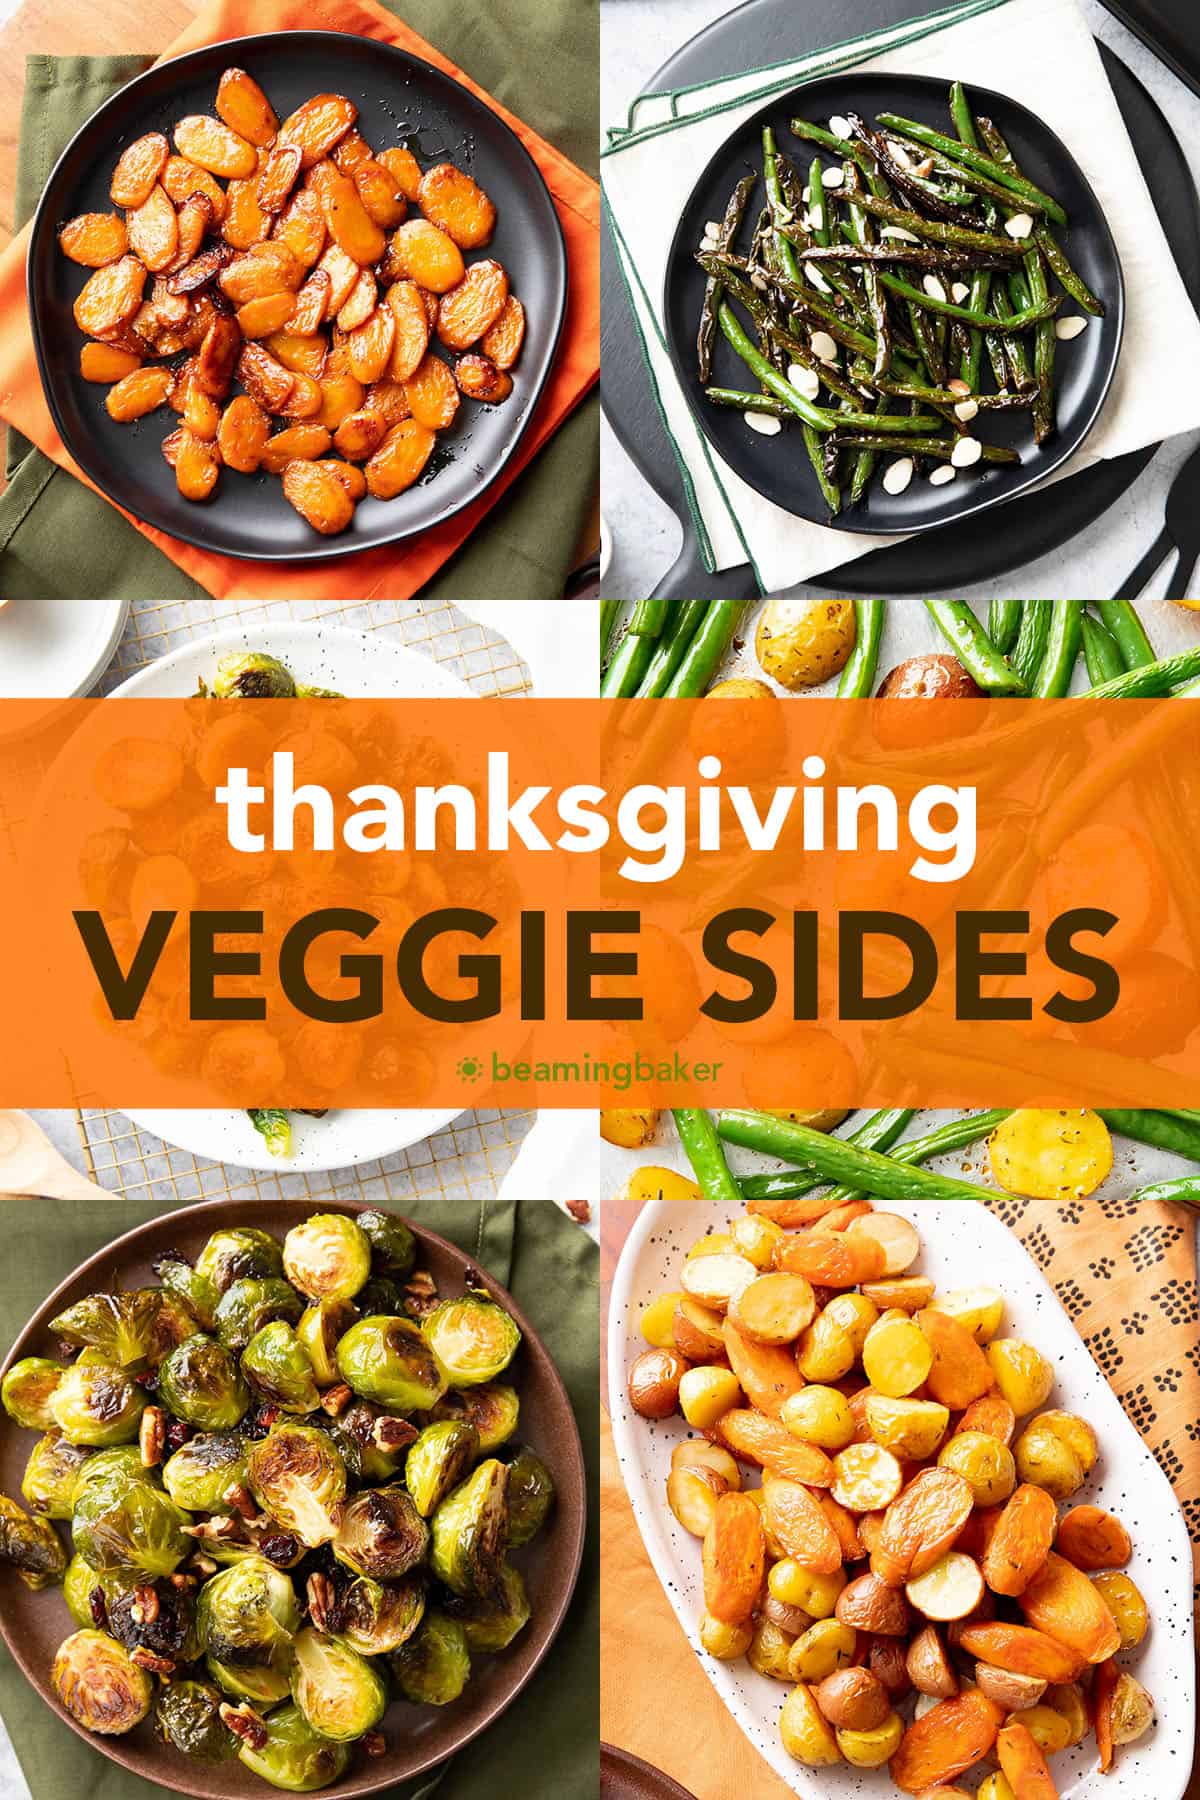 фотоколлаж с рецептами овощных гарниров на День Благодарения